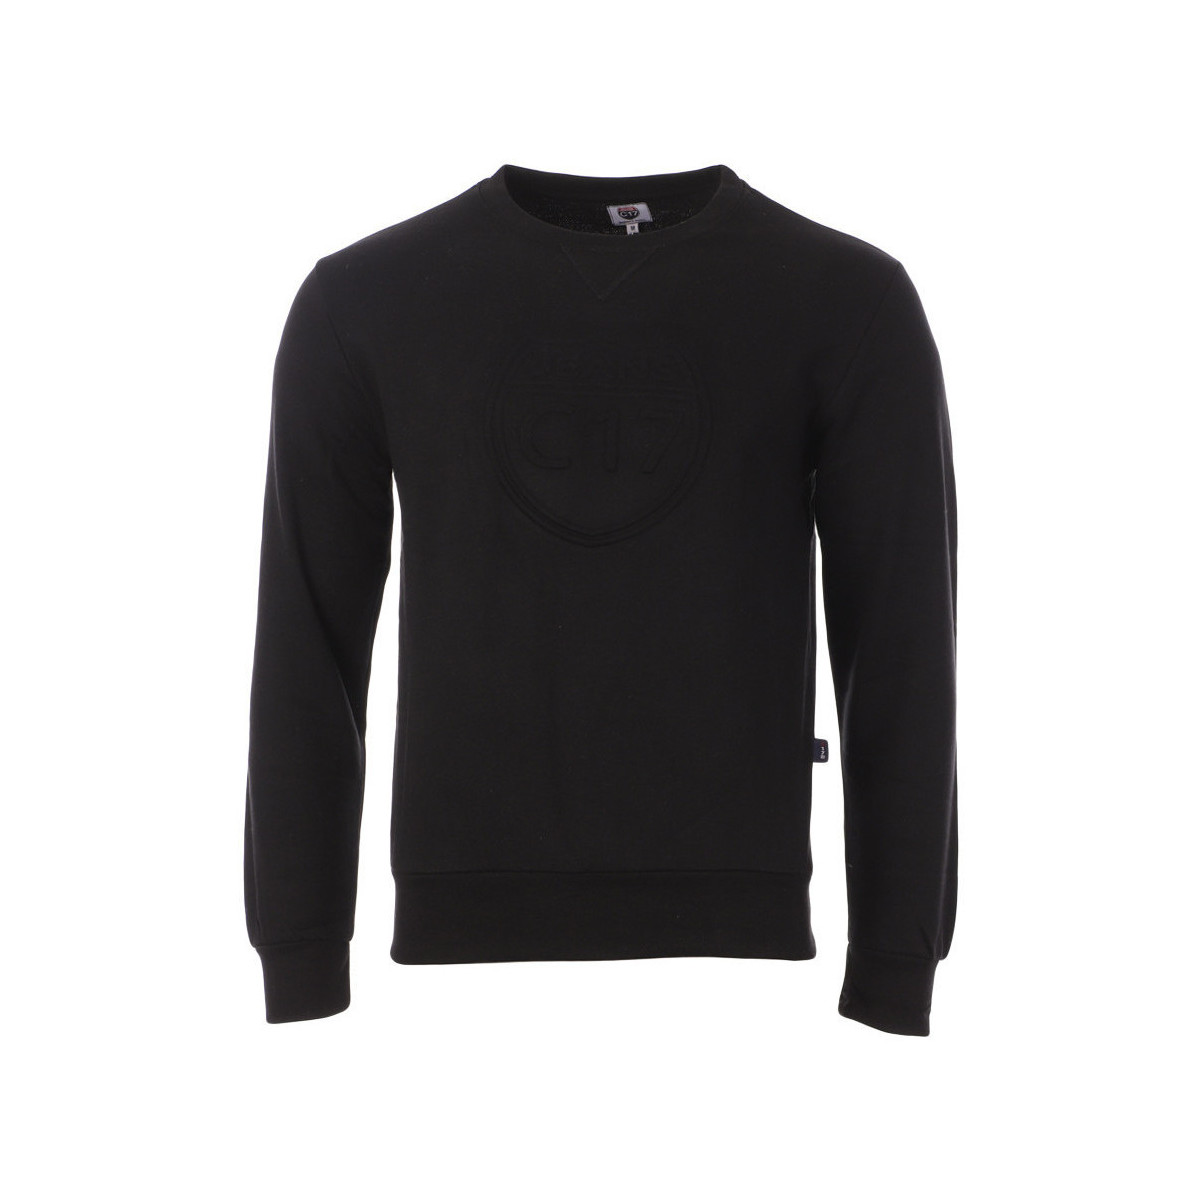 Textiel Heren Sweaters / Sweatshirts C17  Zwart